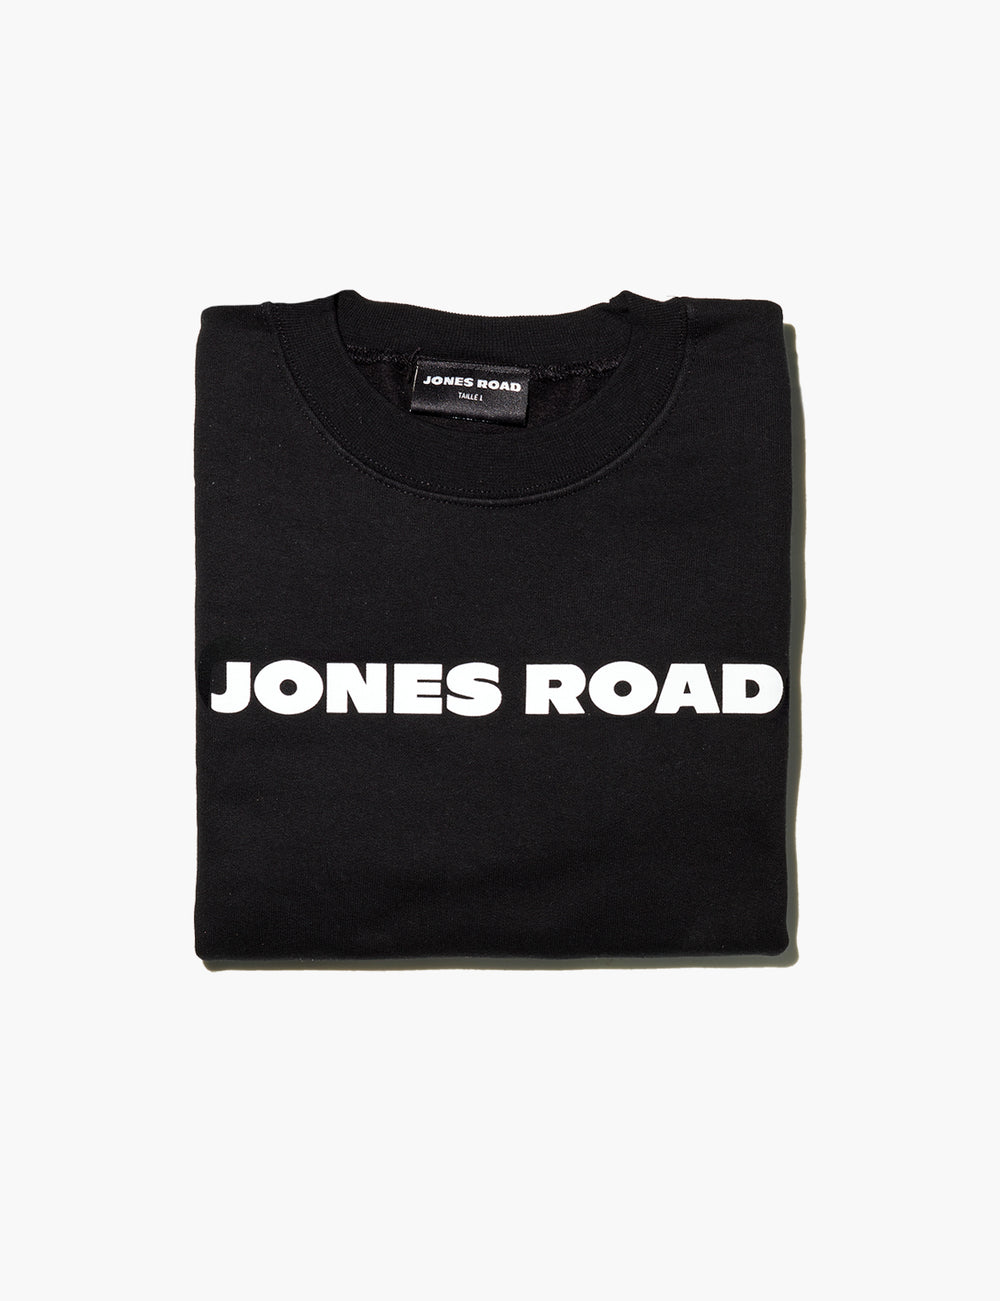 A folded-up Sweatshirt from Jones Road Beauty